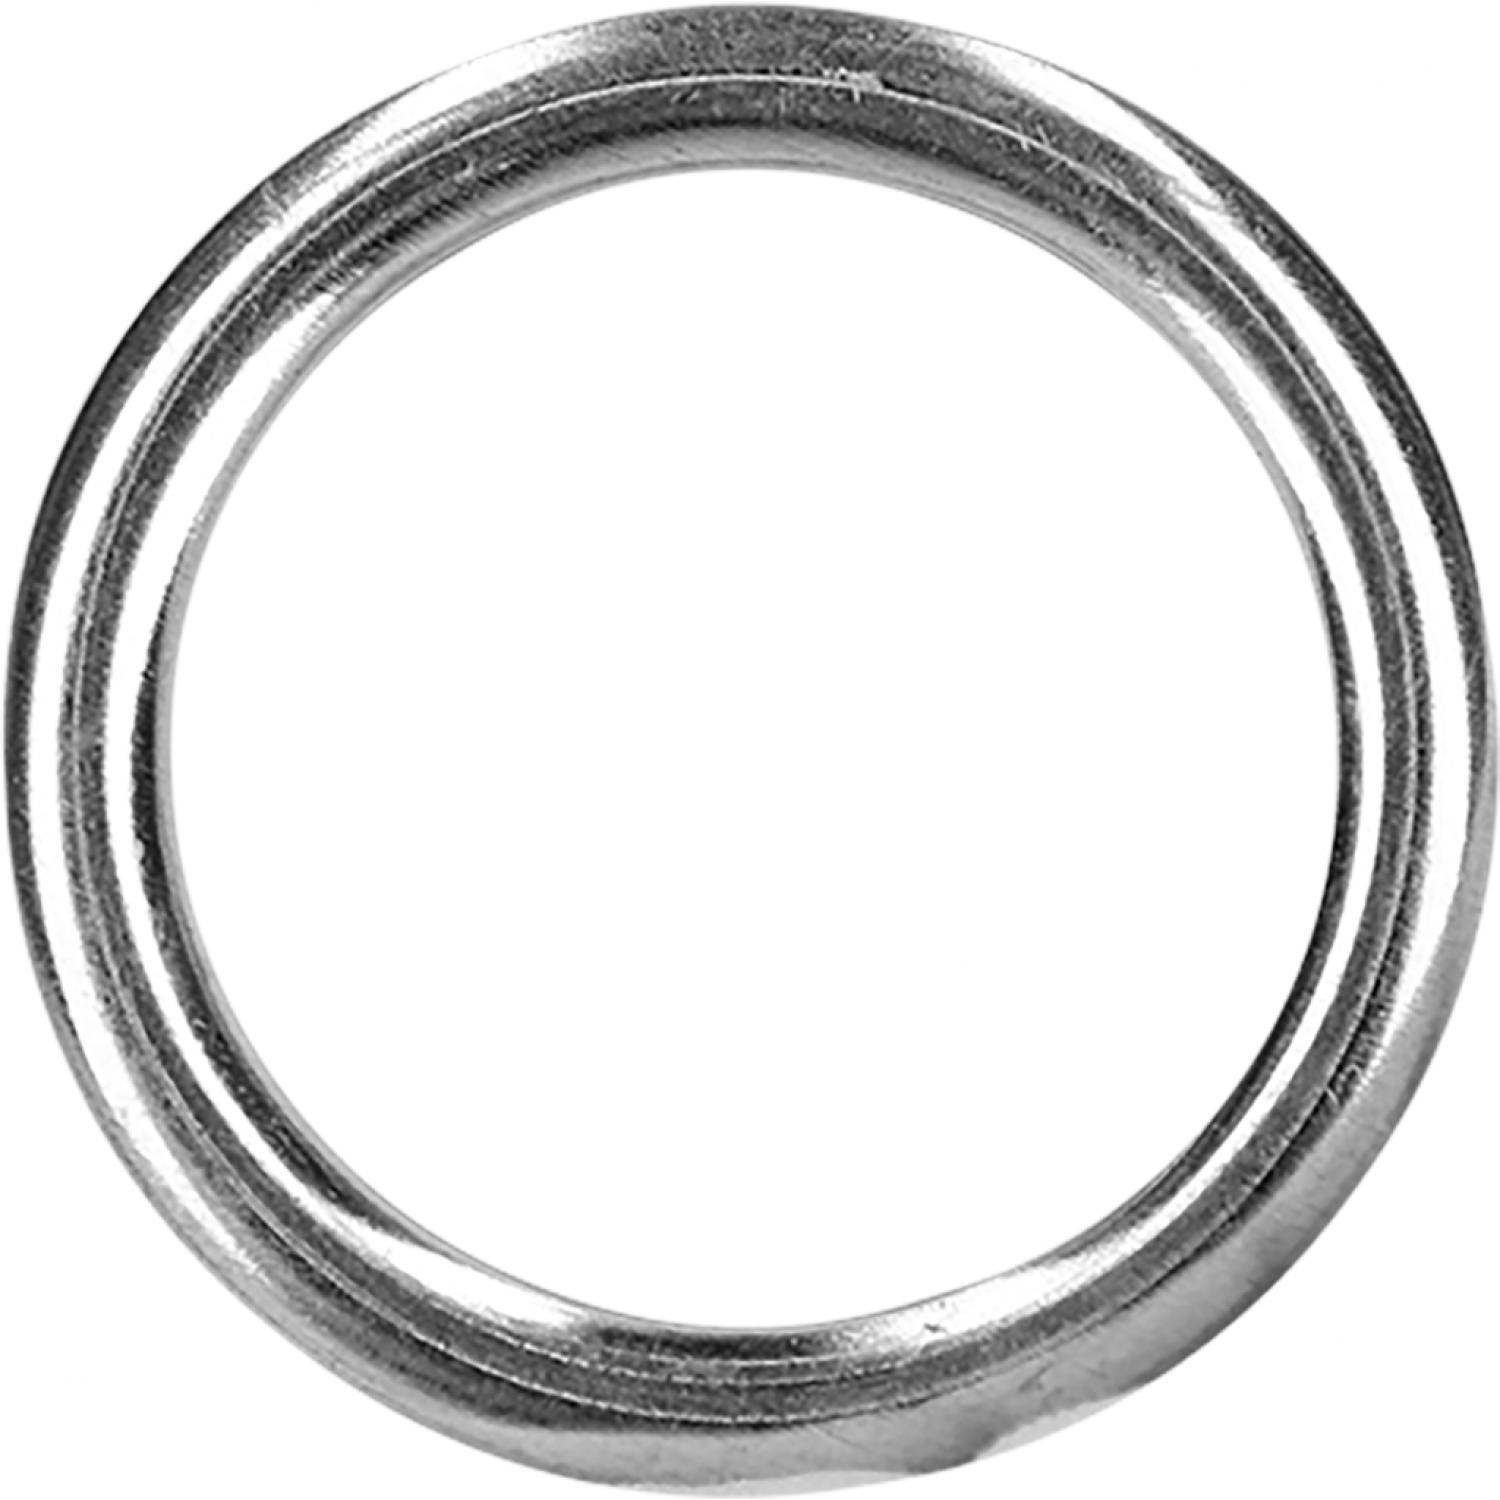 Уплотнительное кольцо, мягкий материал, Ø 32 x 24 мм, 10 шт в упаковке